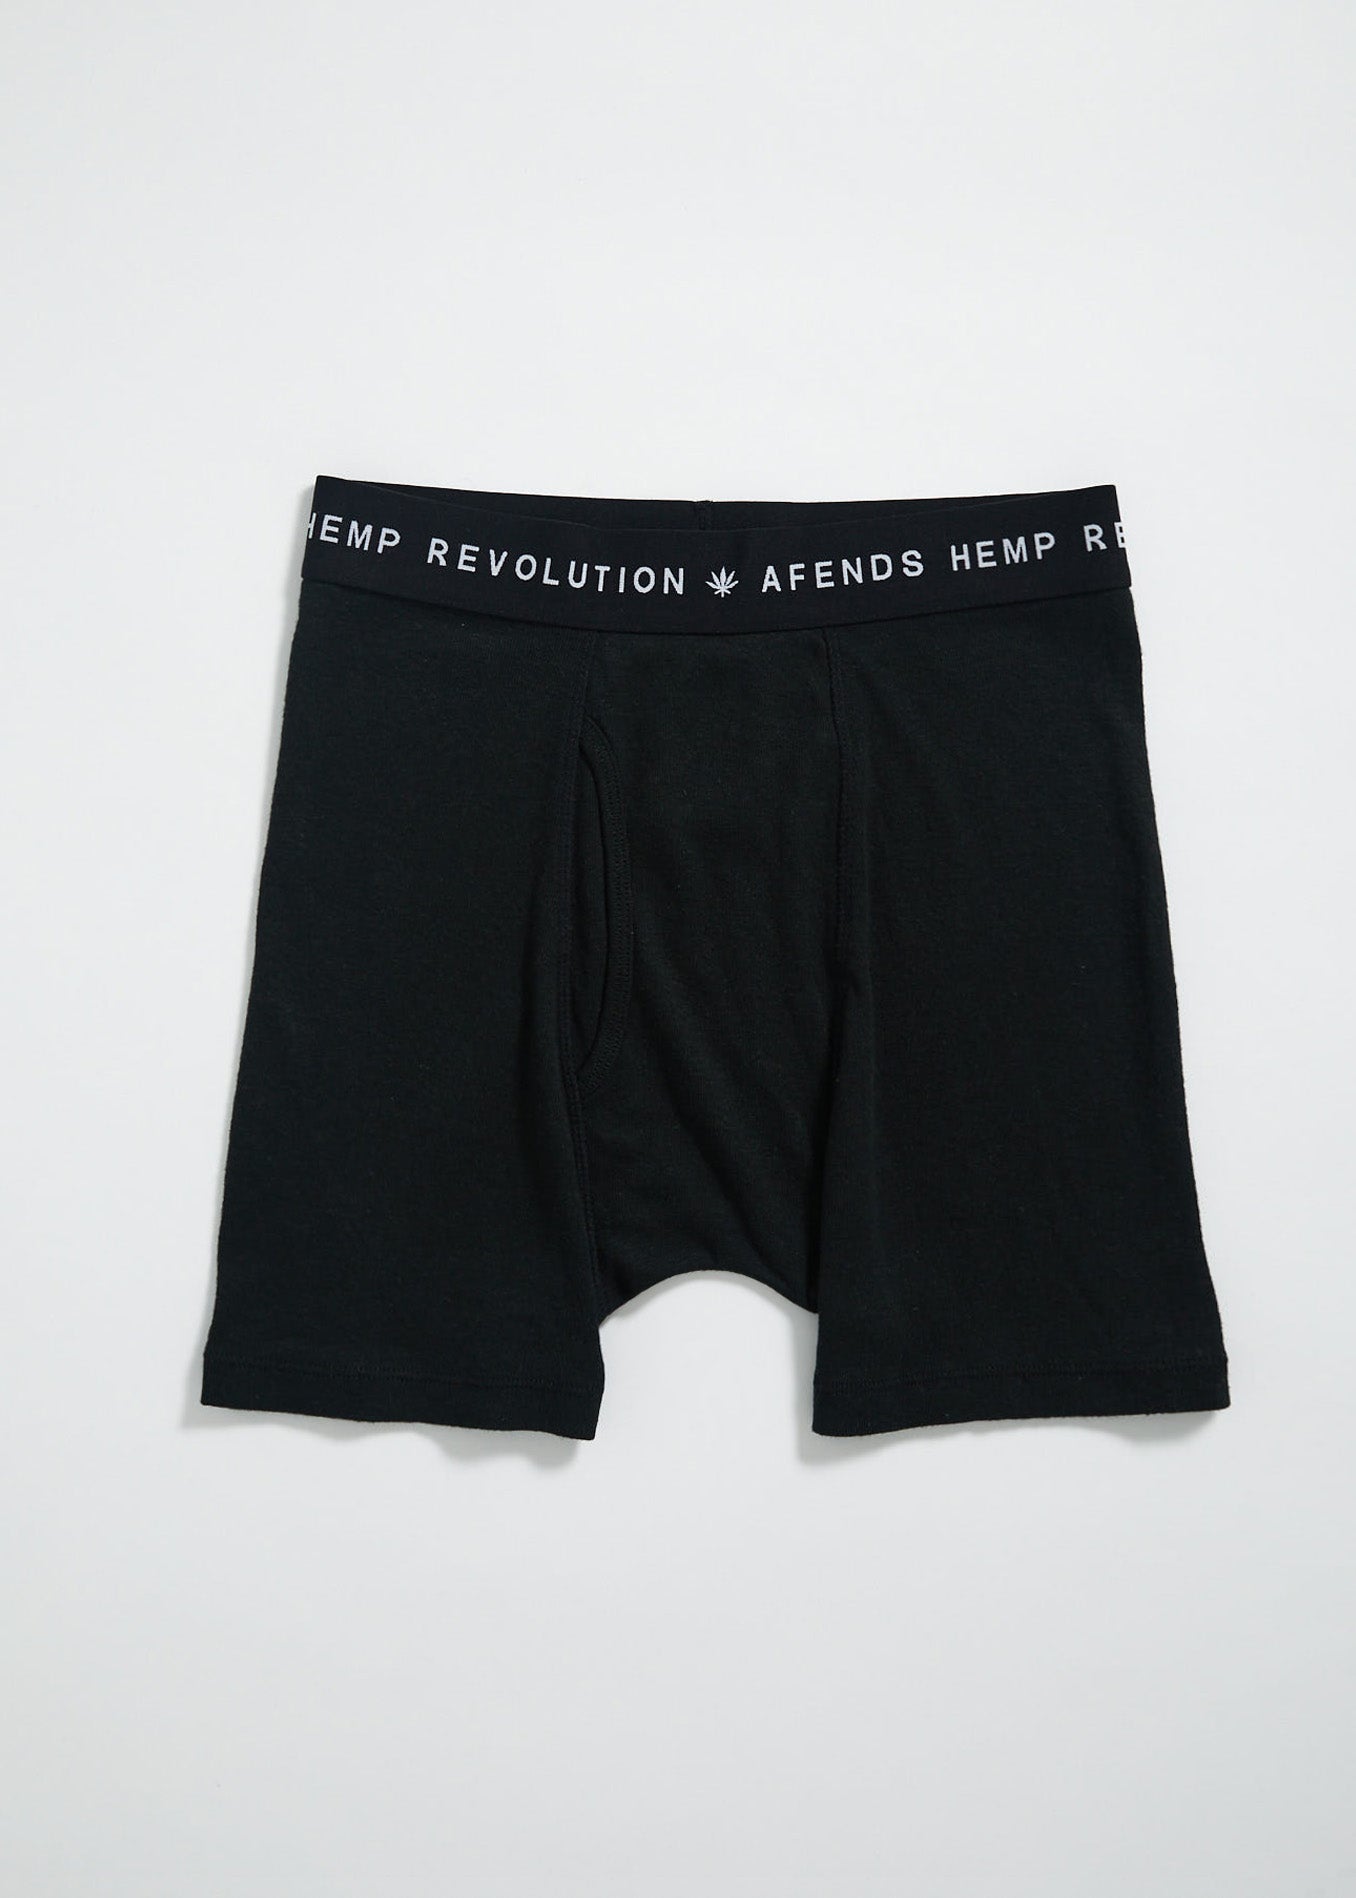 Hemp & Cotton Blend Mens Boxer Briefs Moisture Wicking Performance  Underwear